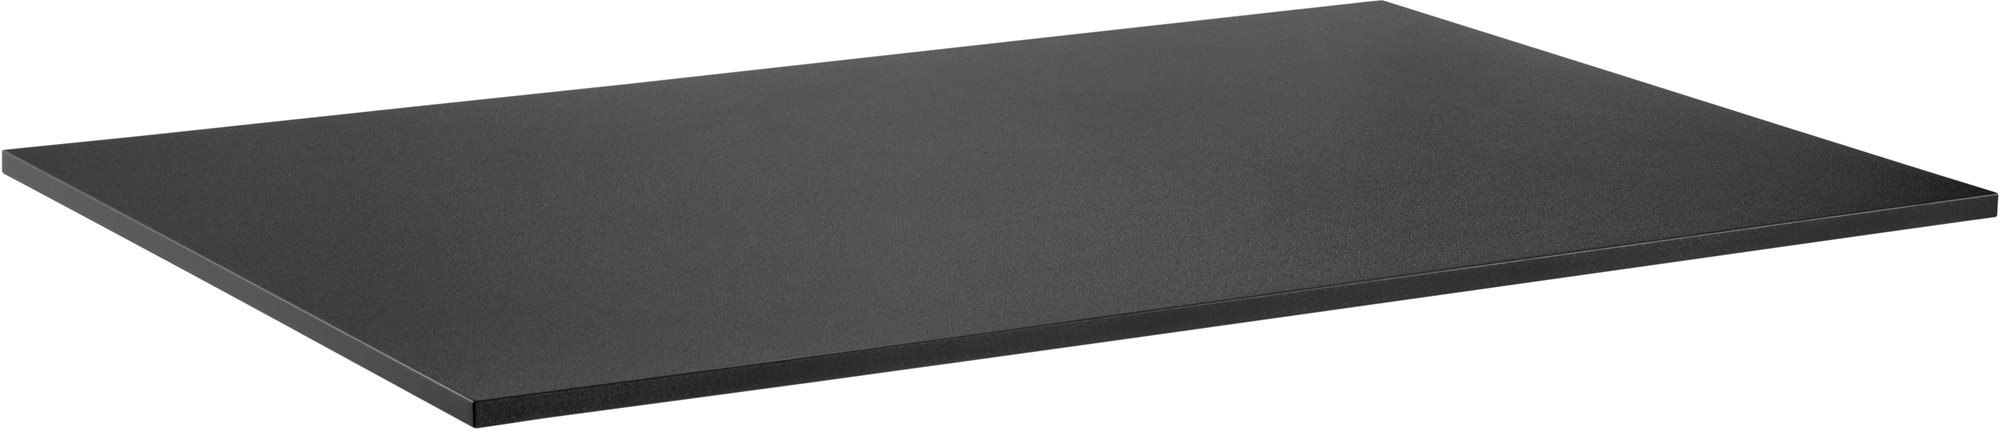 Asztallap AlzaErgo TTE-03 160x80 cm laminált fekete